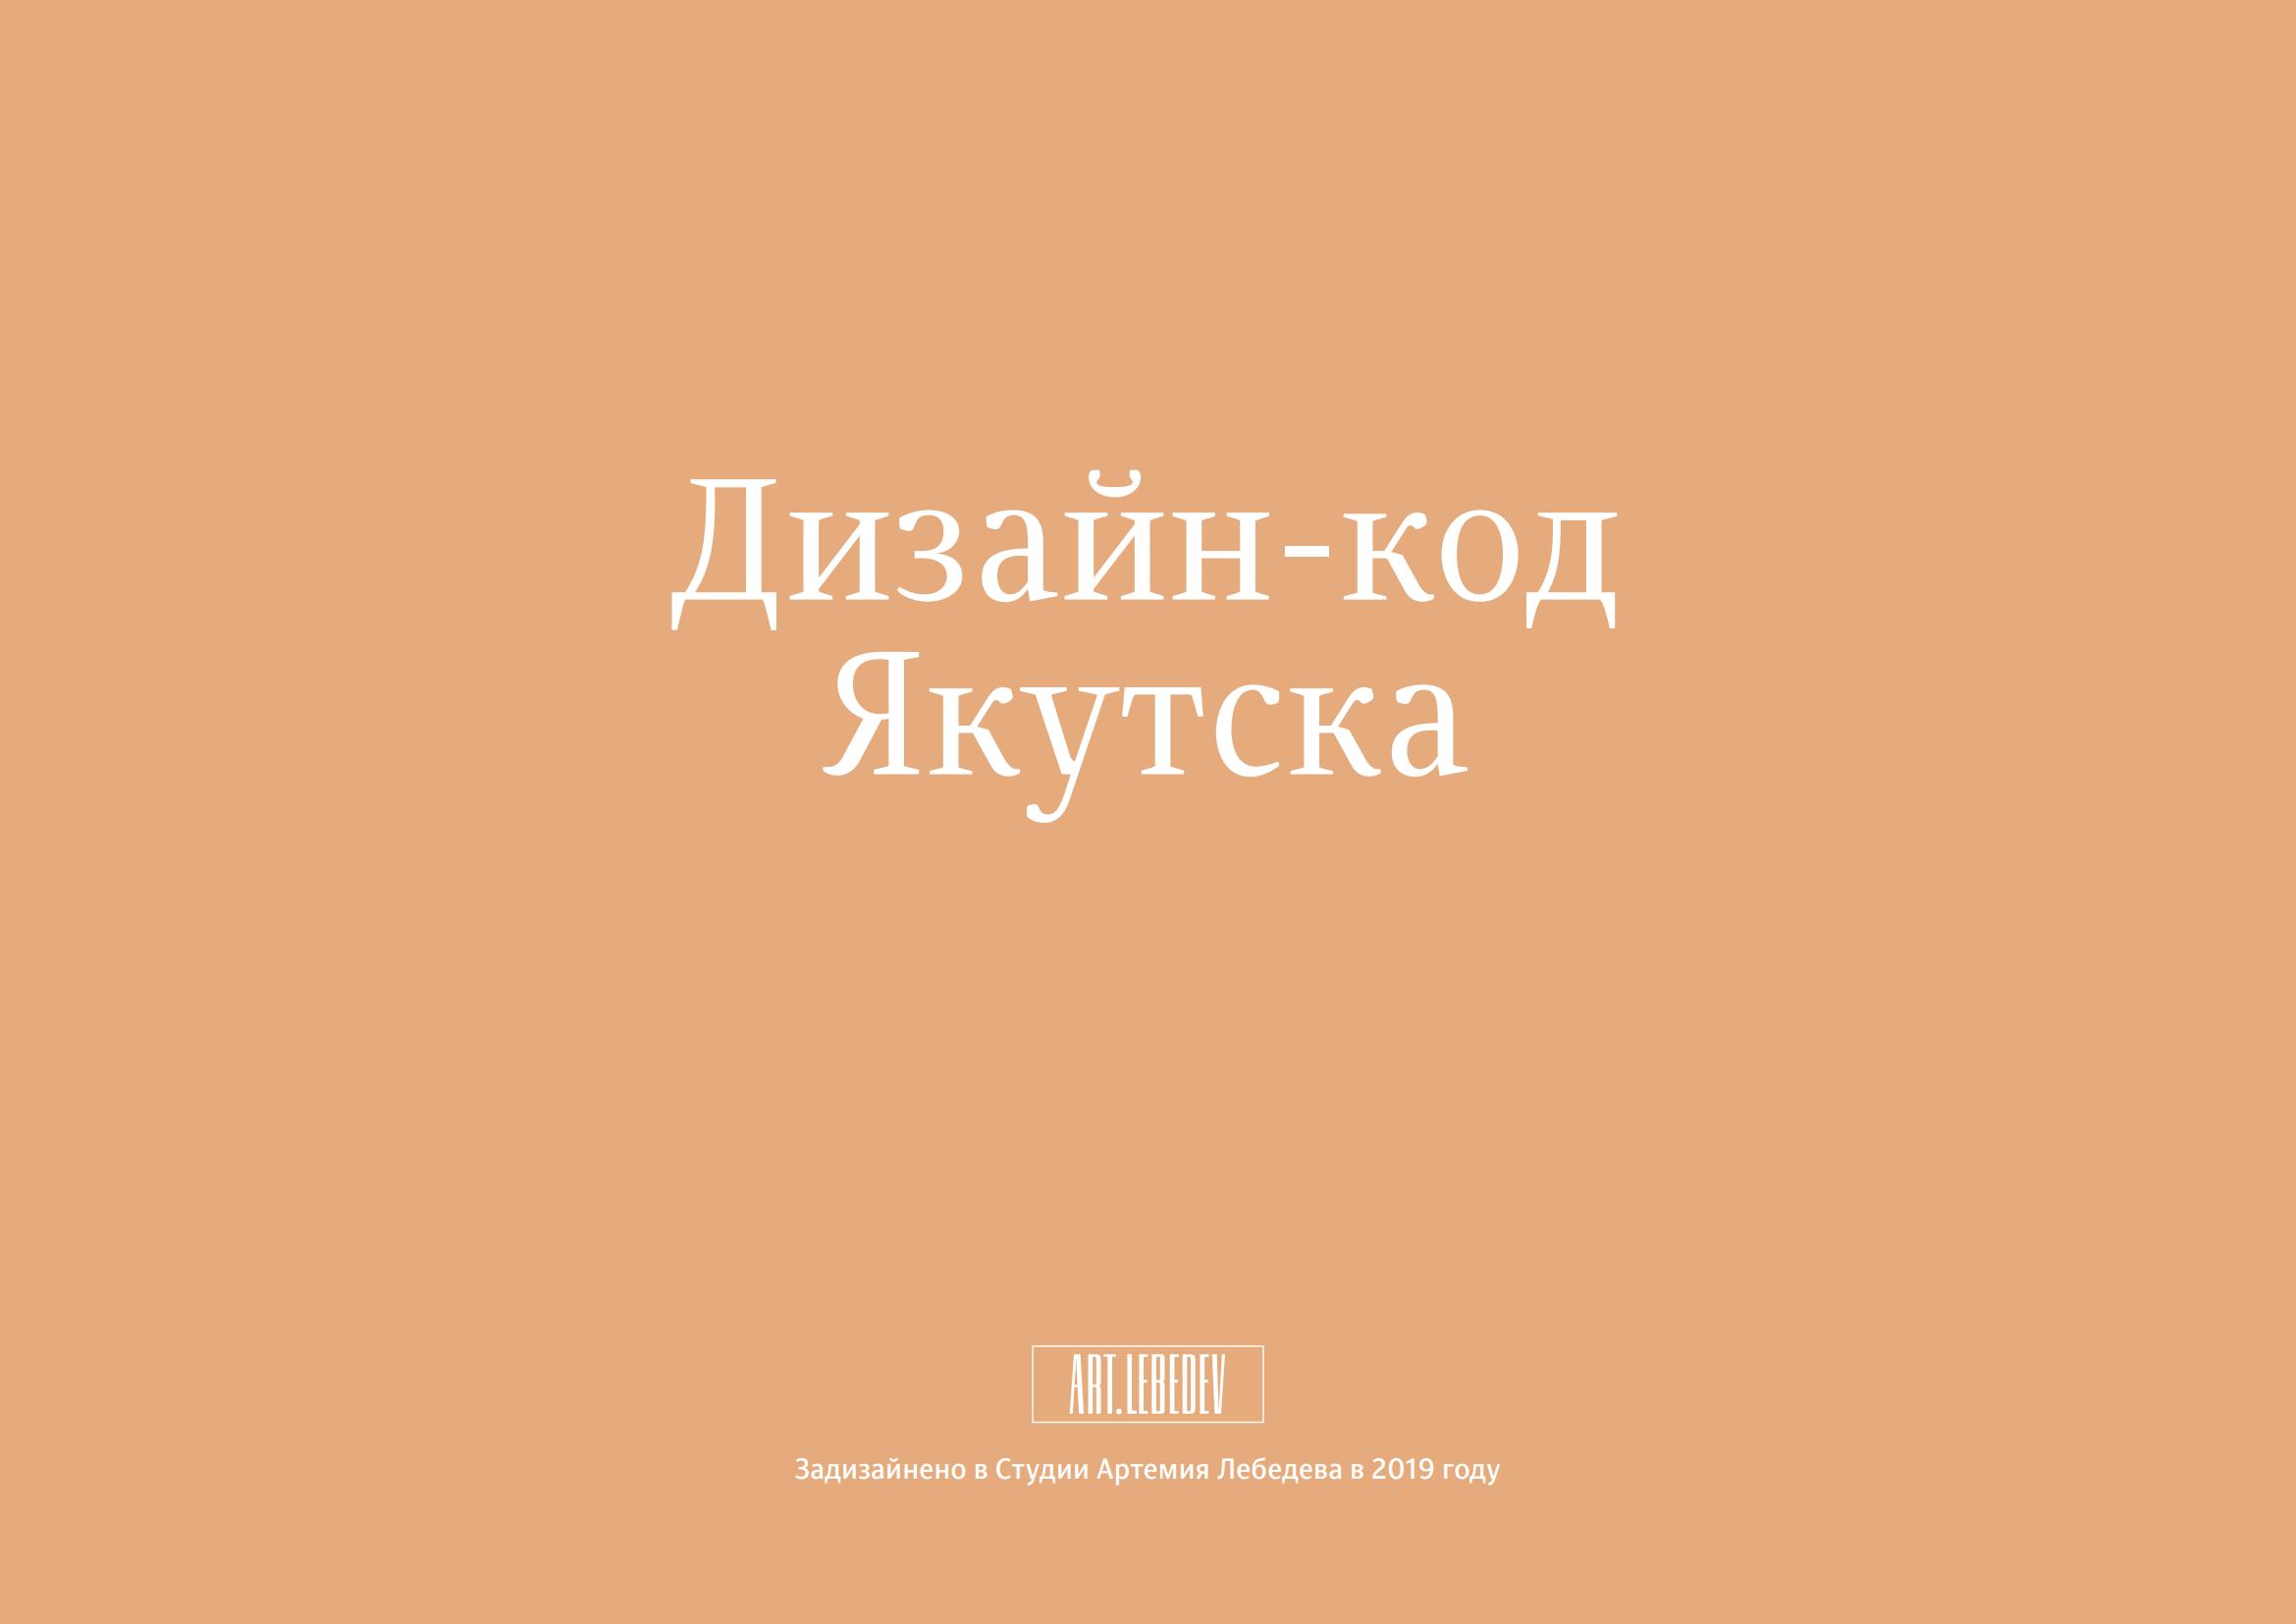 Дизайн-код Якутска. — [Б. м.] : Студия Артемия Лебедева, 2019